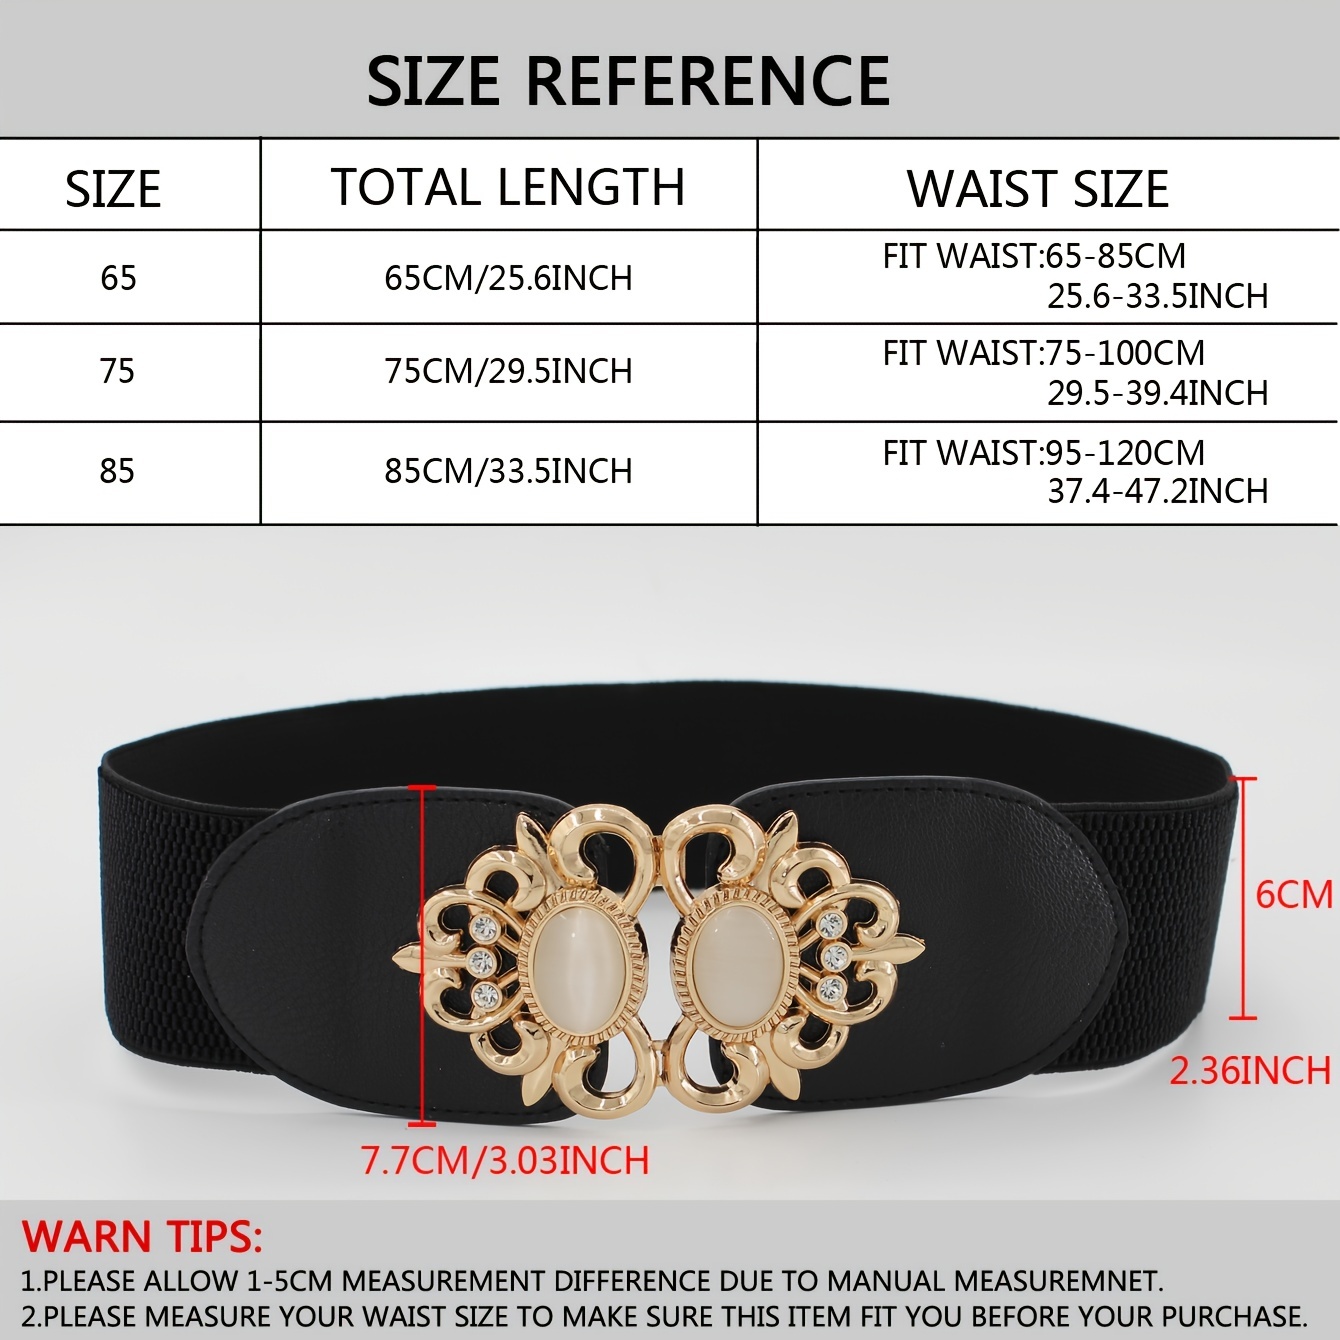 How to Make a High Waist Belt